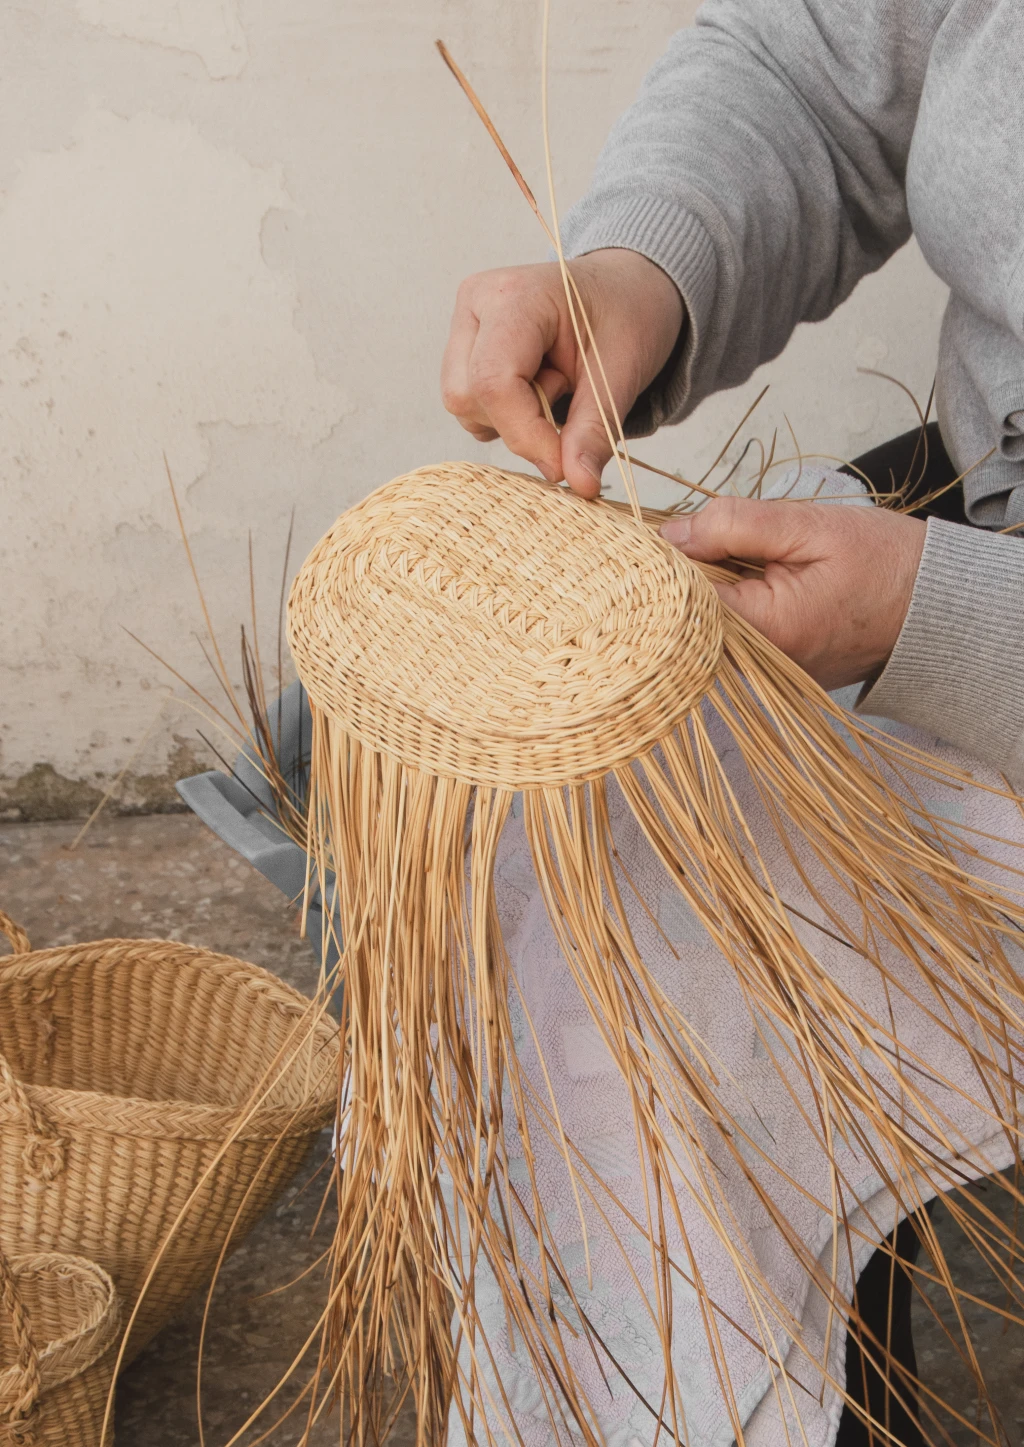 Tre Gioie dalla Puglia is on a mission to preserve the traditional arts in Puglia